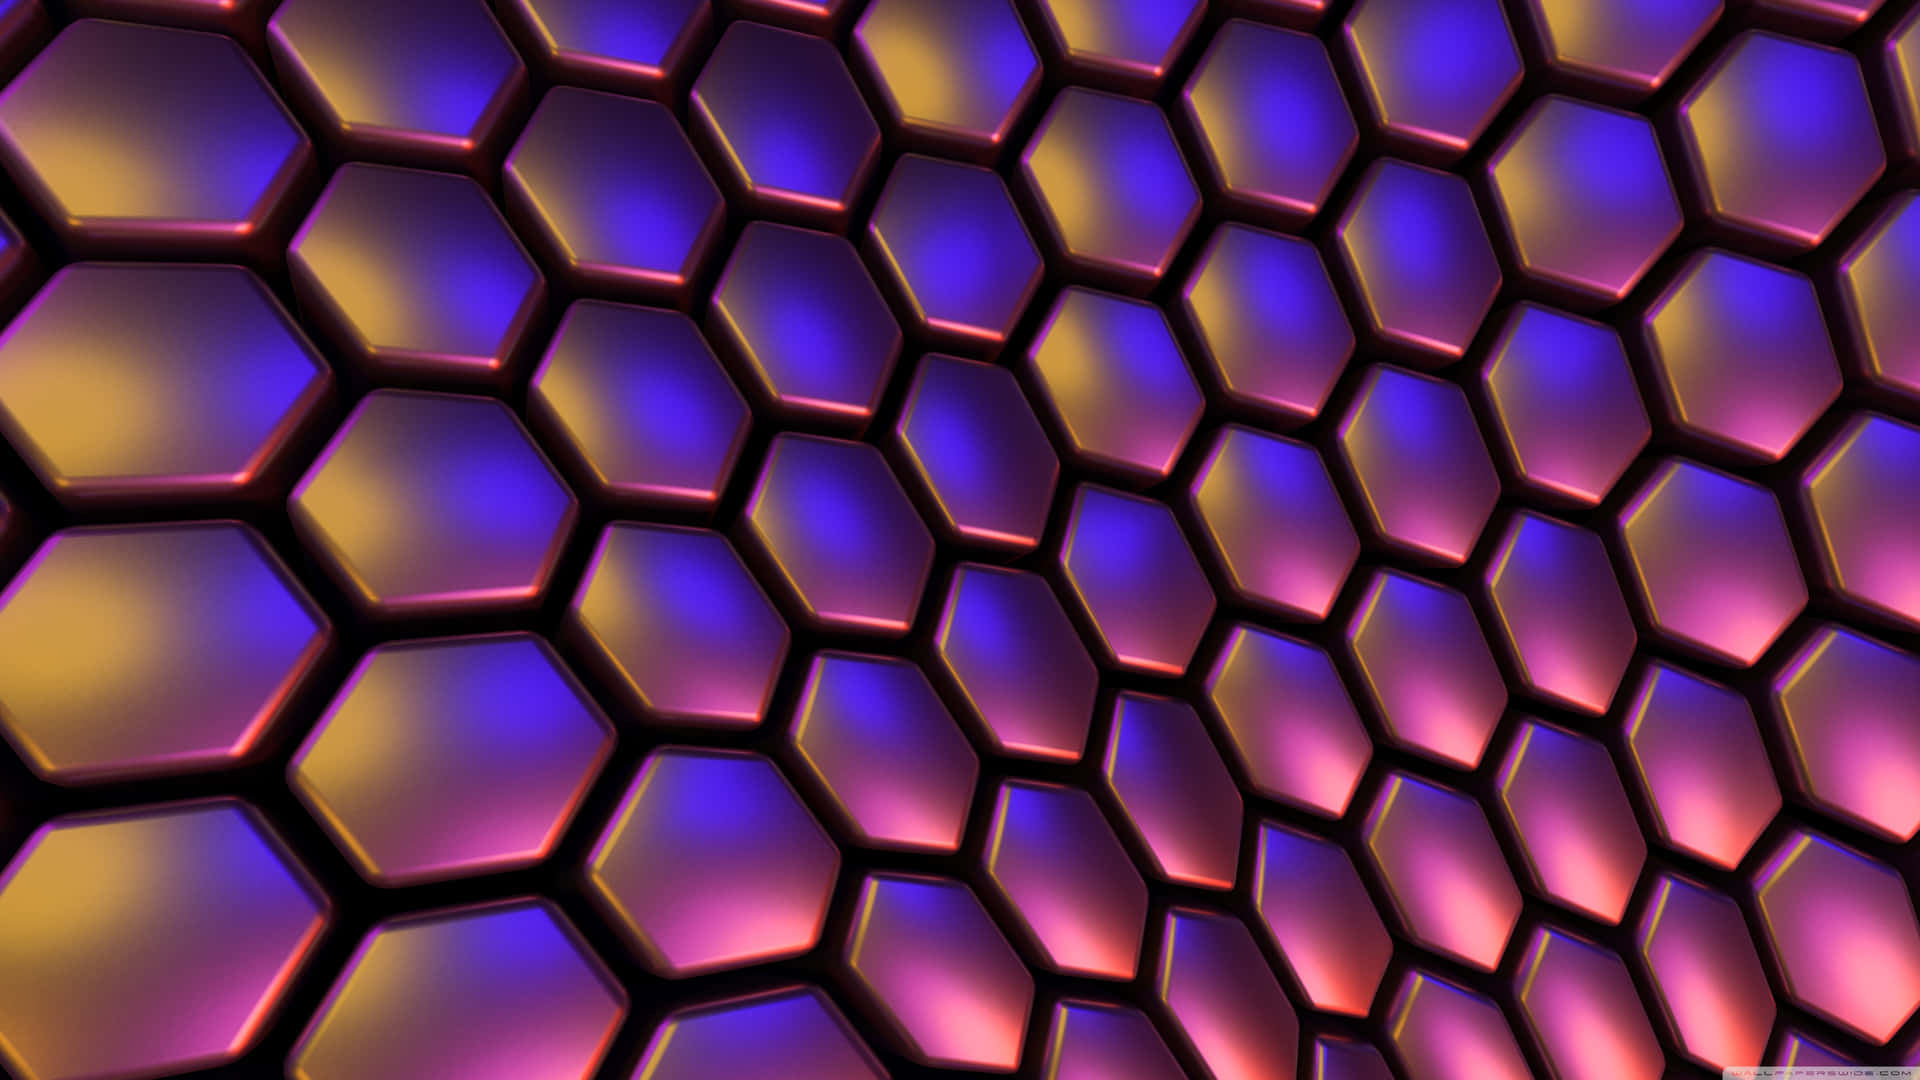 Entdeckedie Unendlichen Formen Und Lebendigen Farben Dieses Atemberaubenden Hexagon 4k Hintergrundbilds. Wallpaper